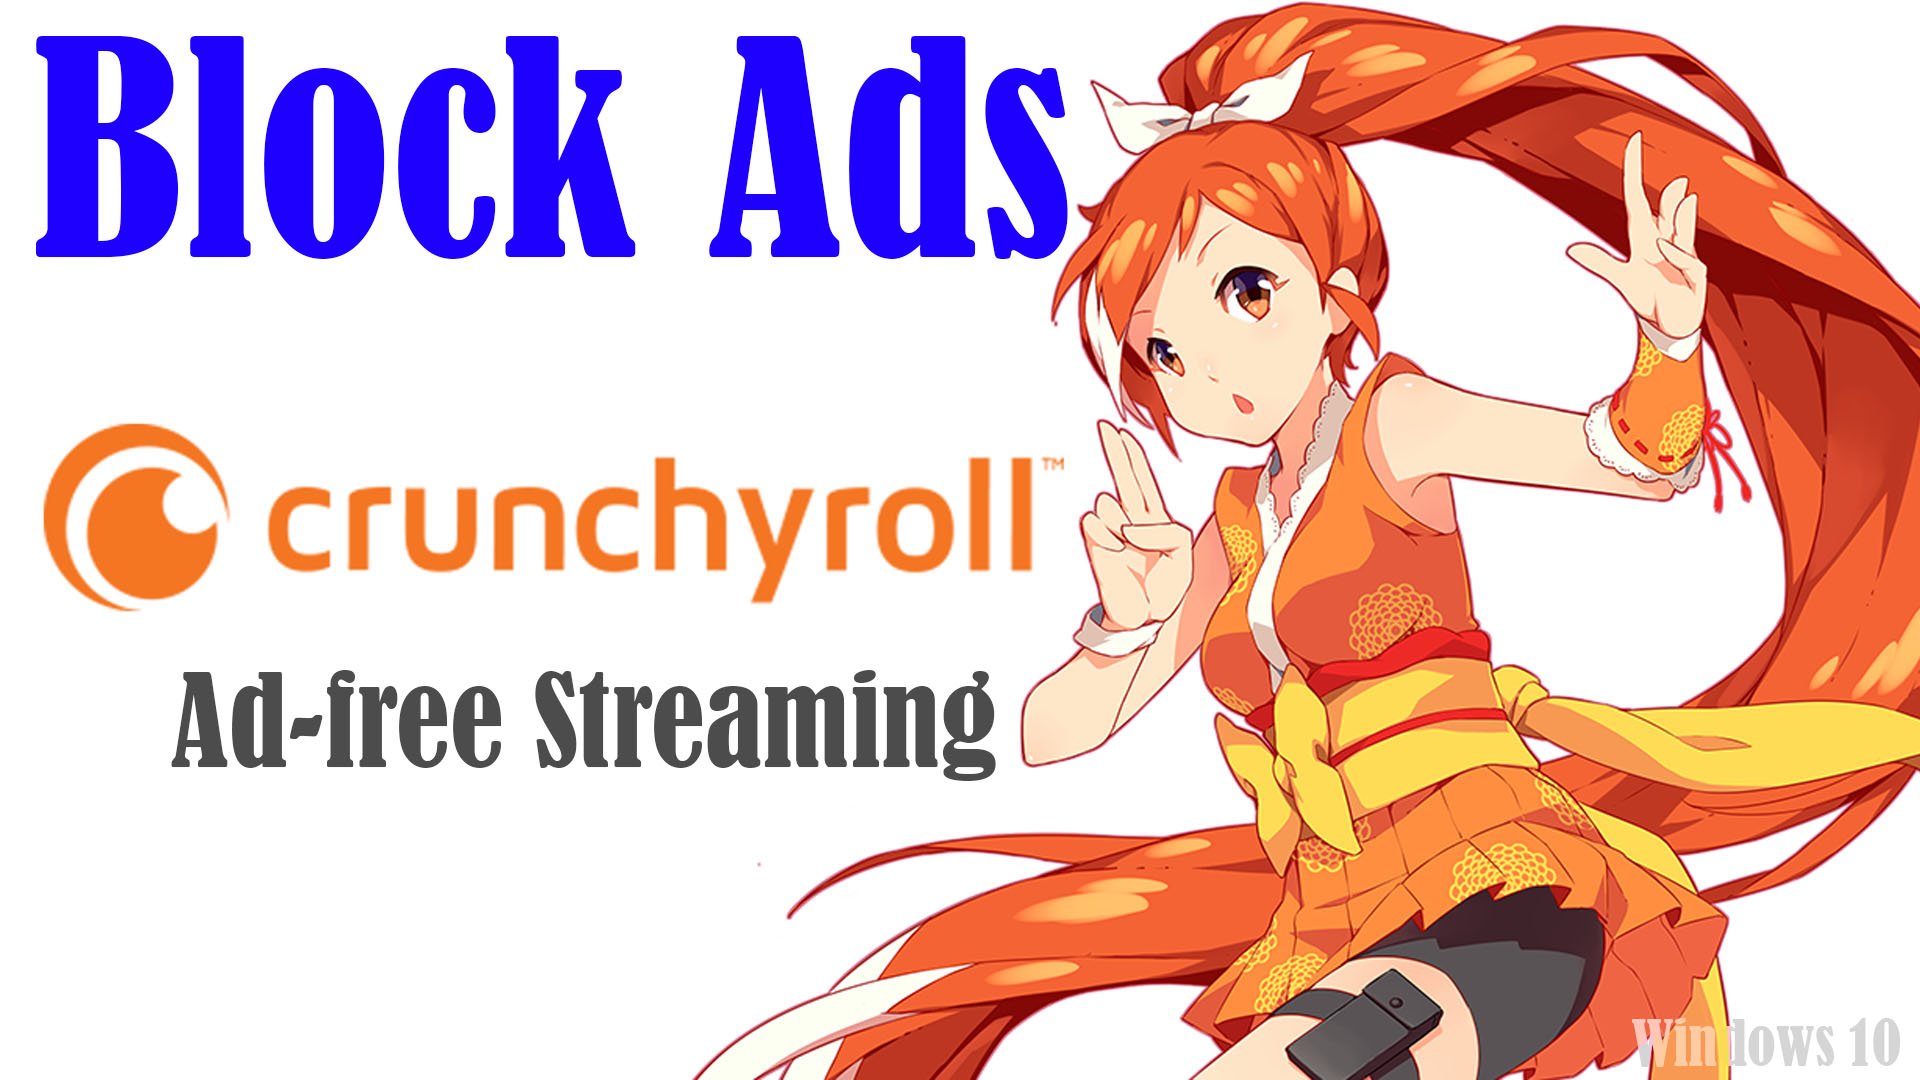 Crunchyroll forum